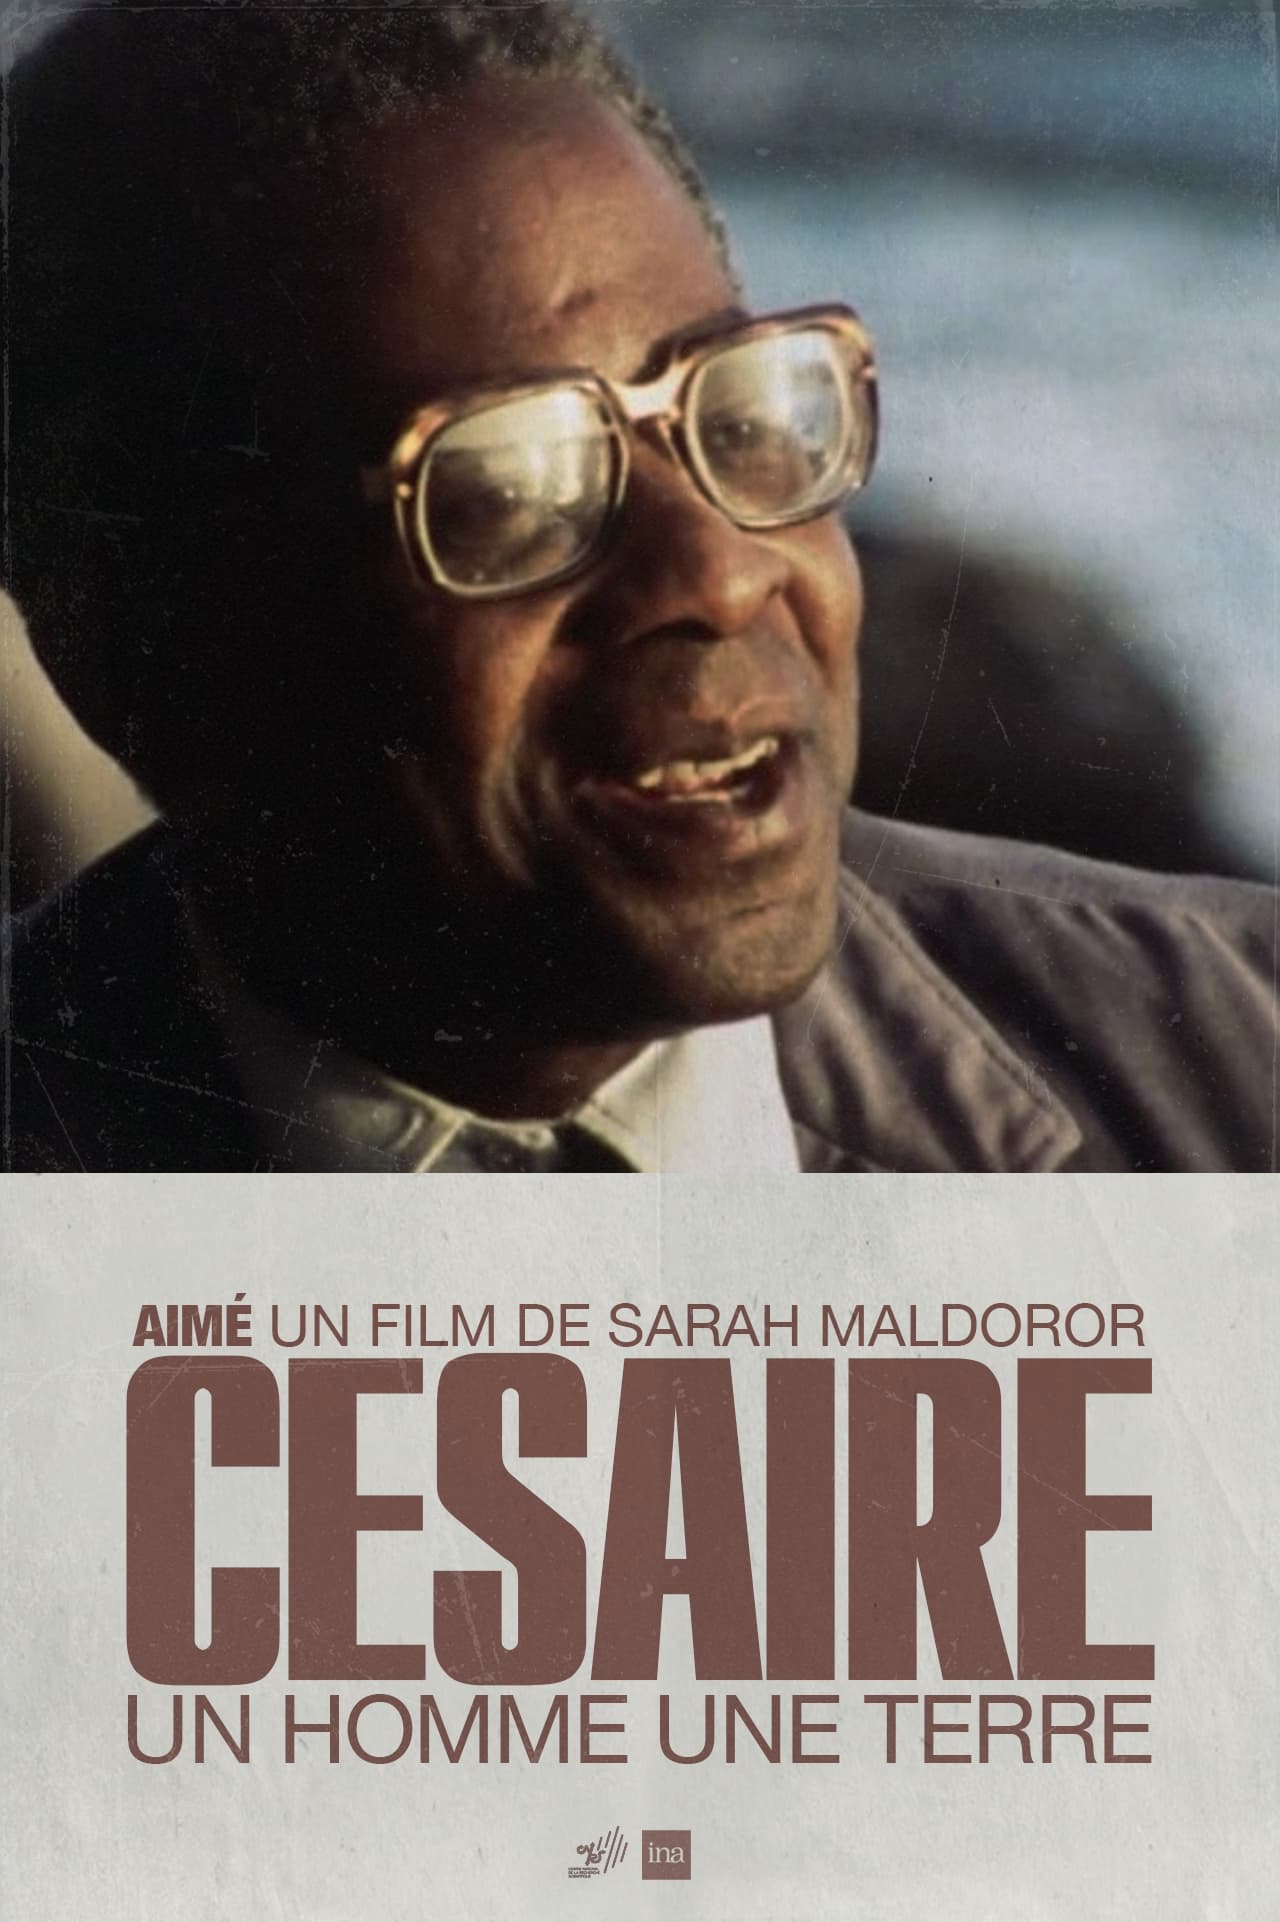 Aimé Césaire, Un homme une terre film